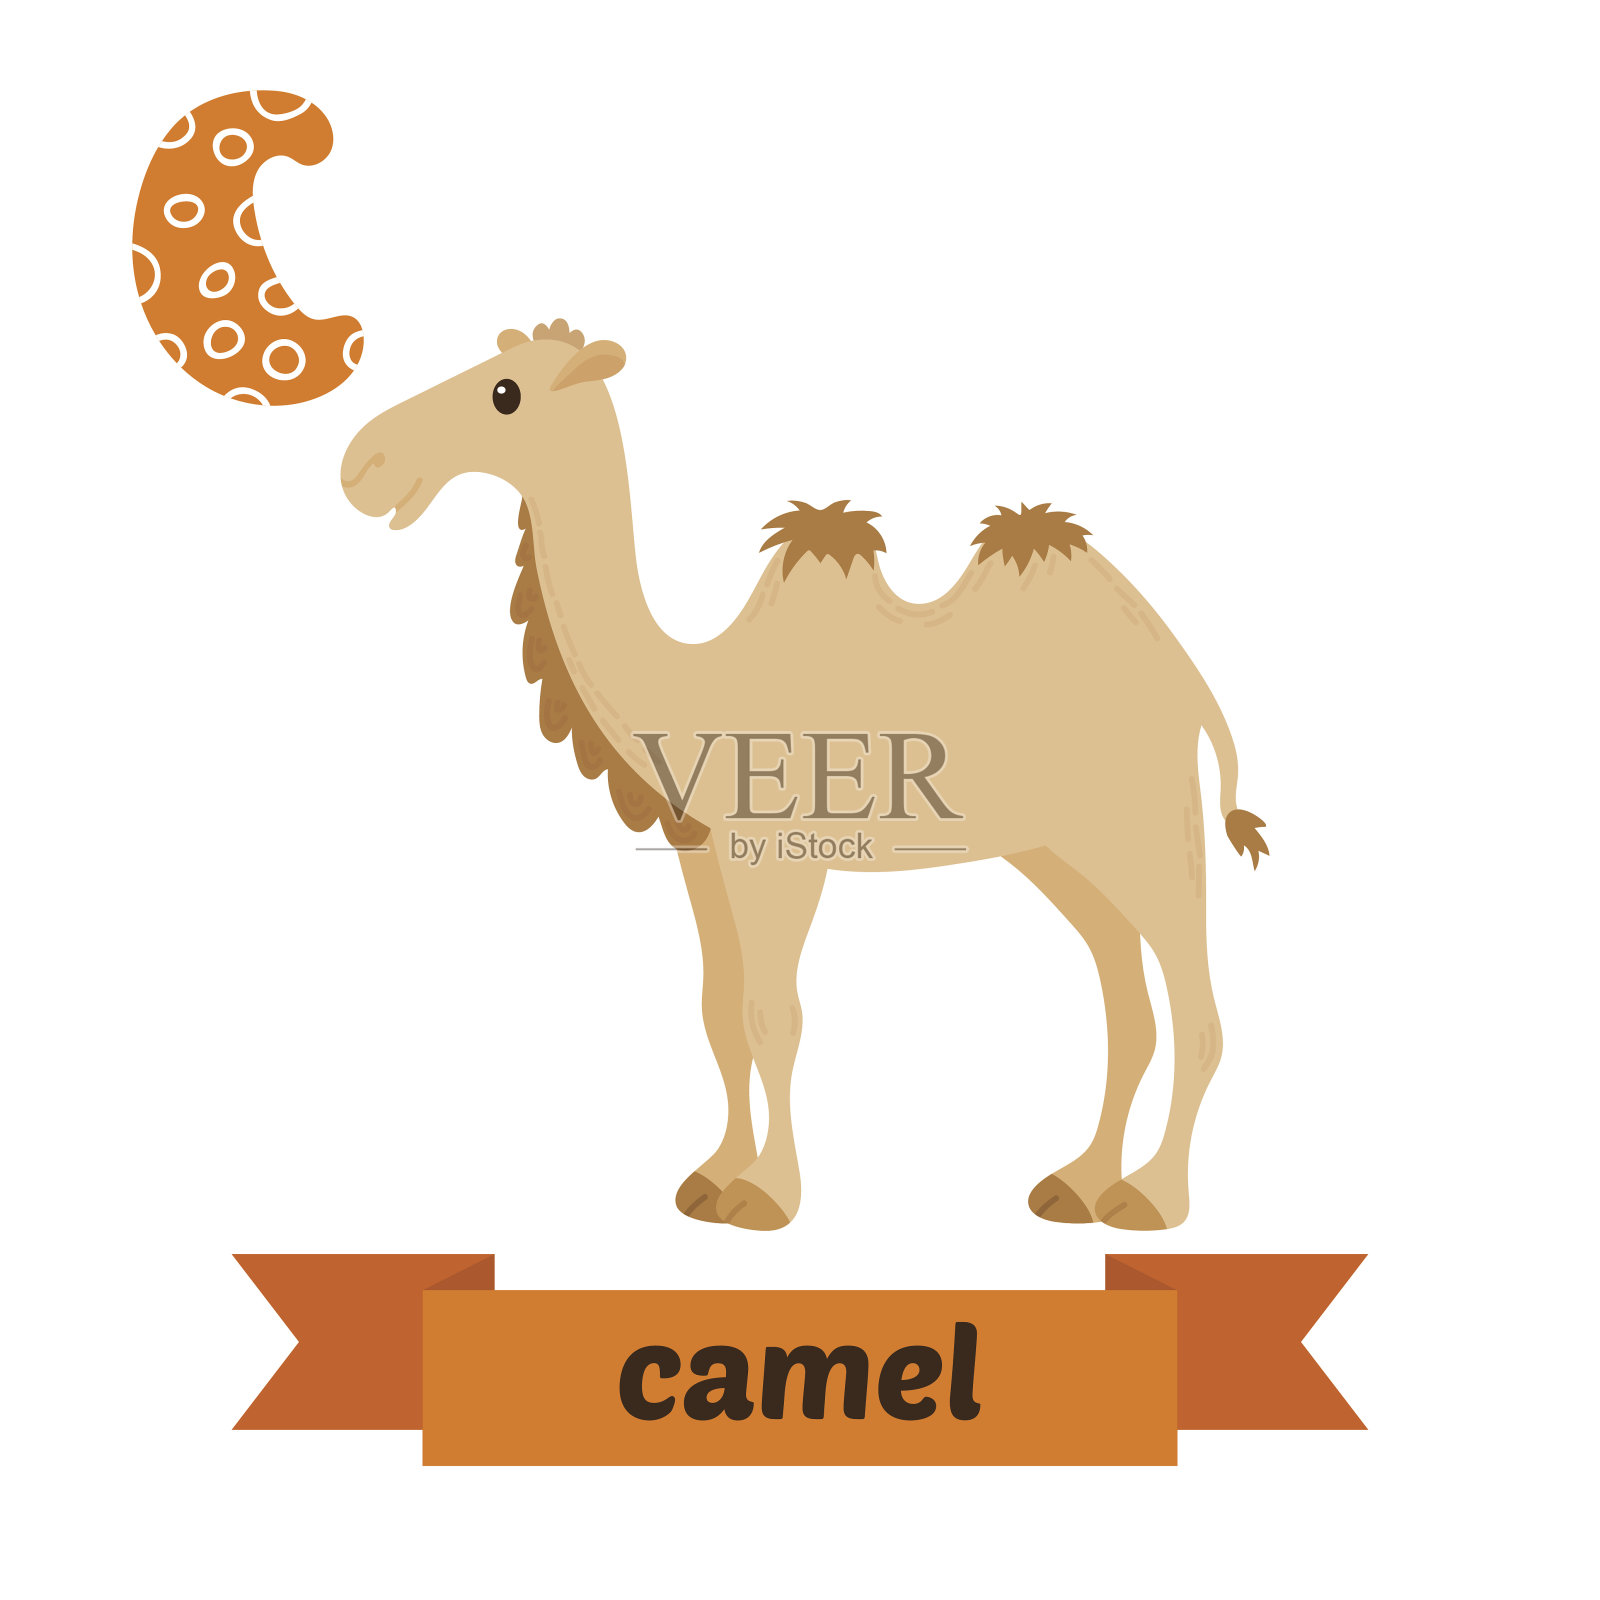 骆驼。C的信。可爱的儿童动物字母向量。有趣的插画图片素材